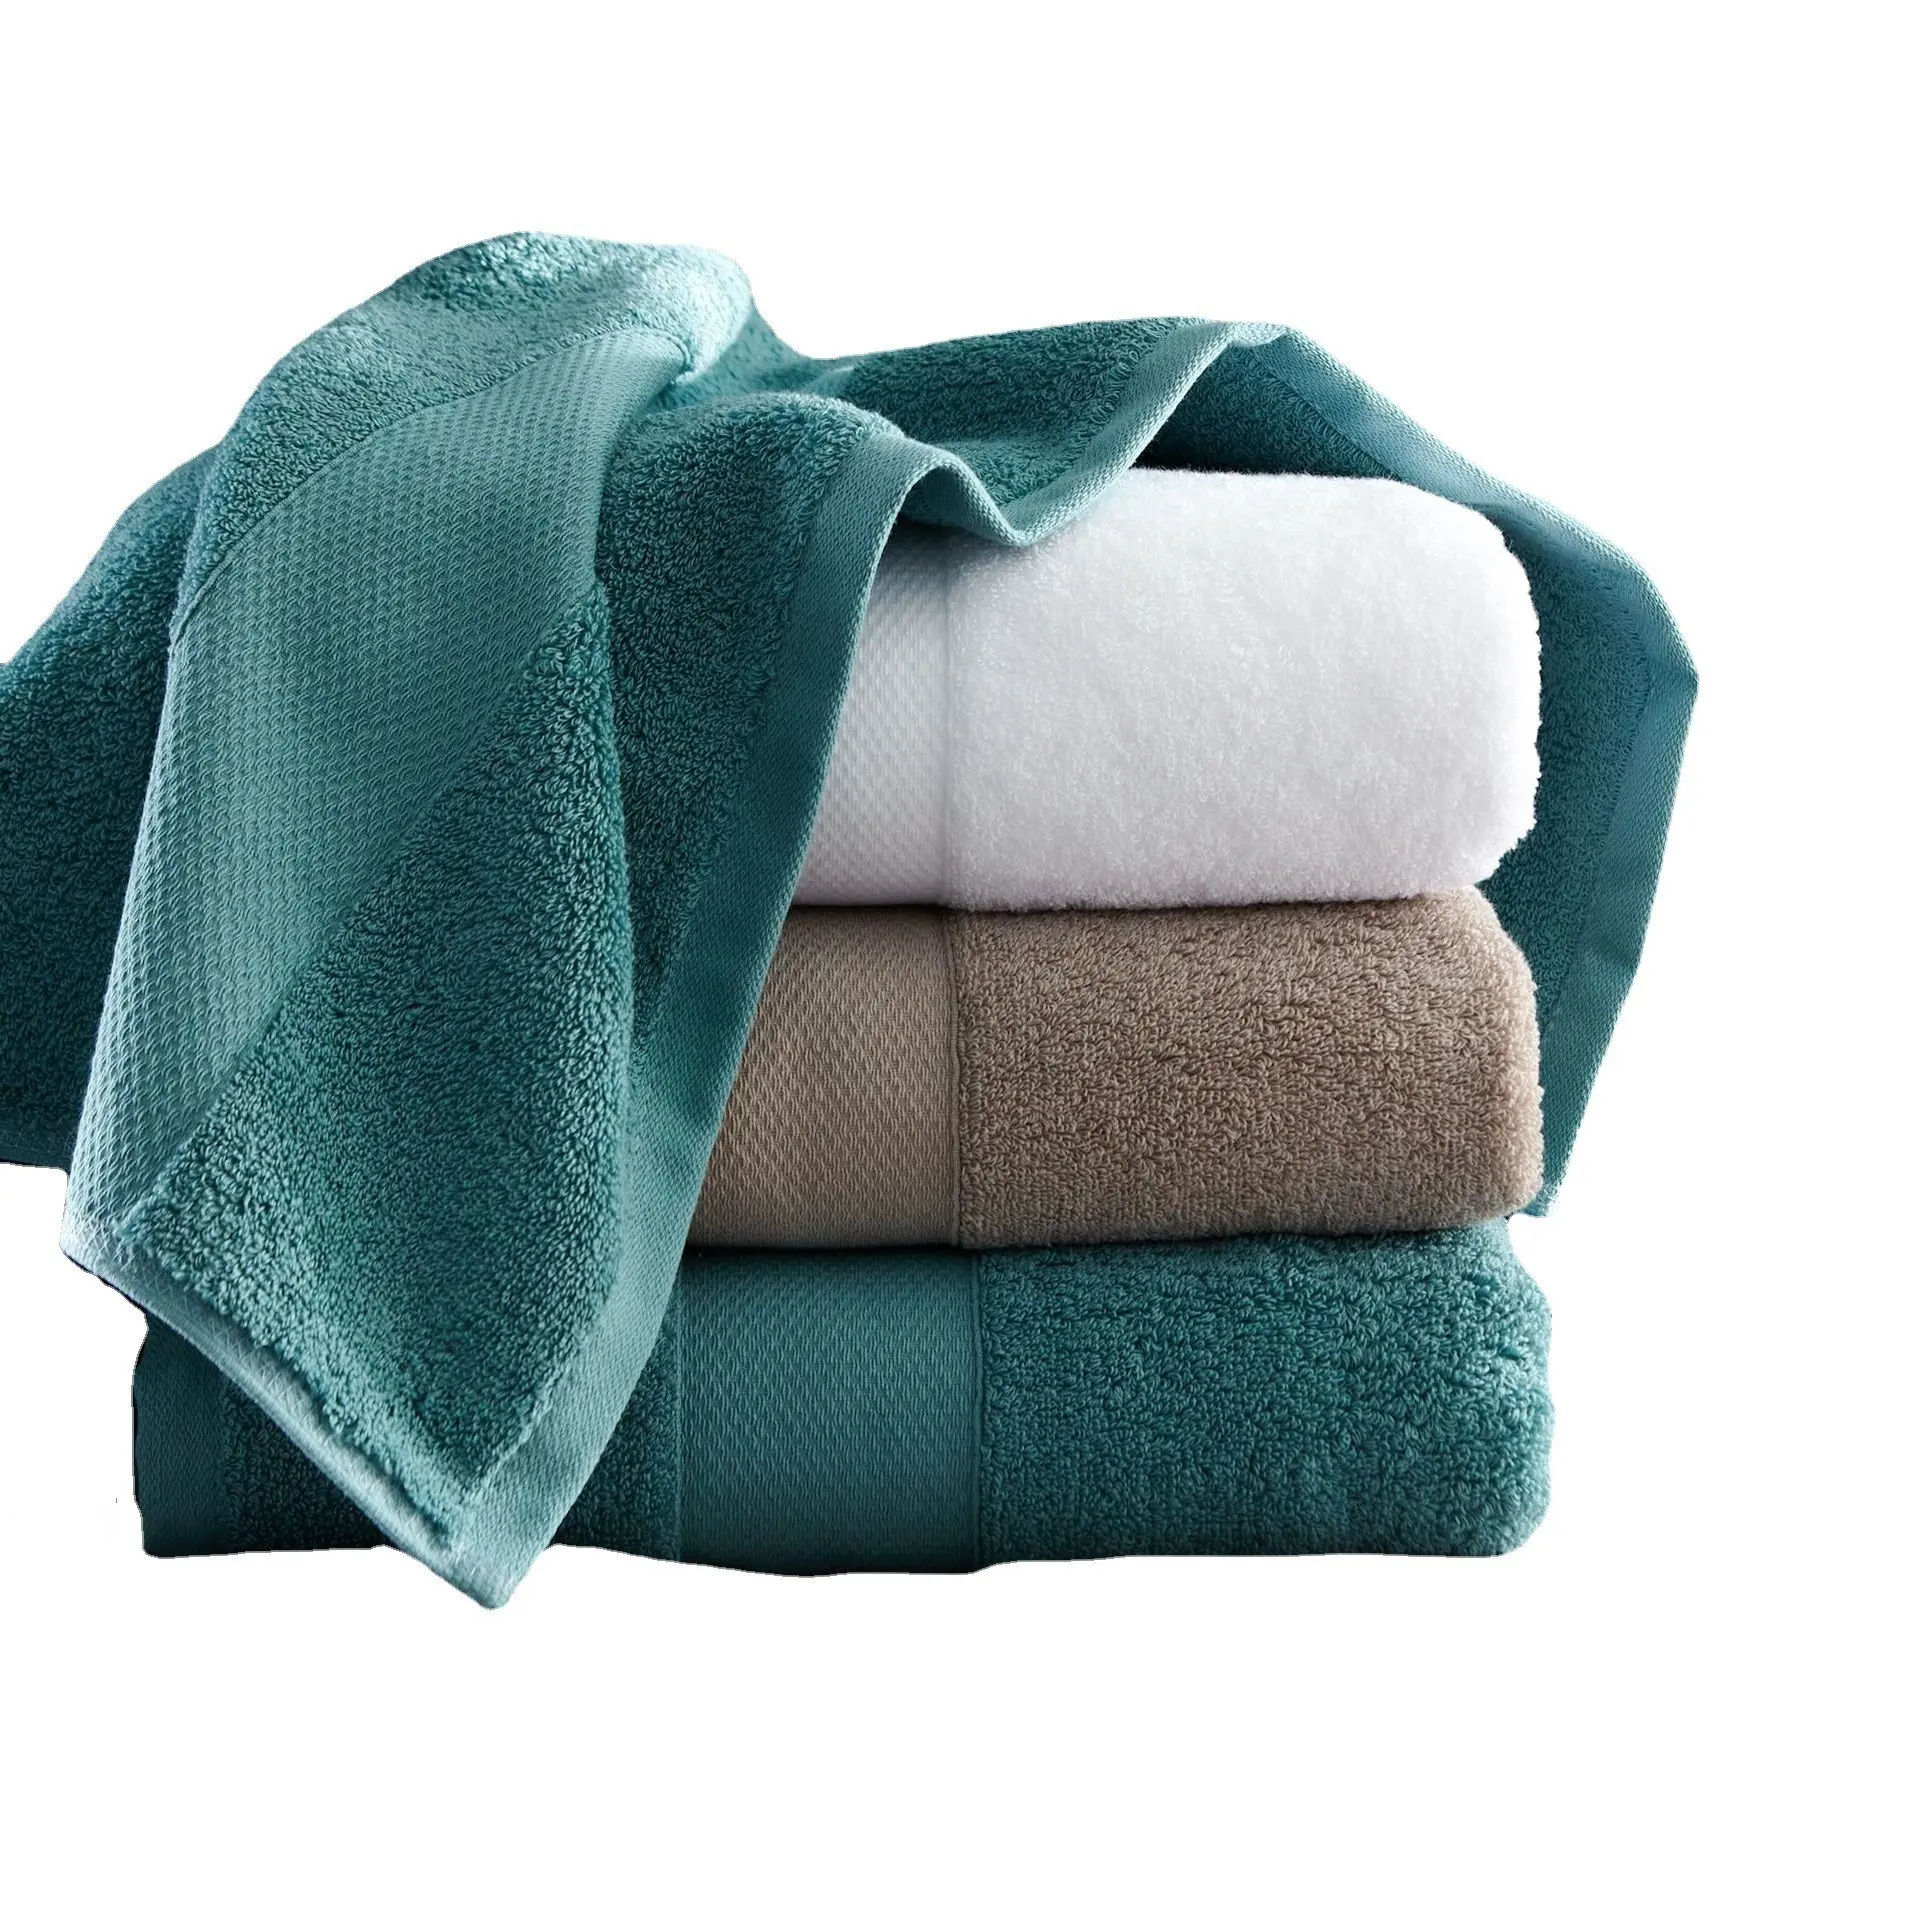 Serviette de bain 100% coton de haute qualité drap de bain blanc de luxe et ensemble de serviettes de toilette pour la maison d'hôtel